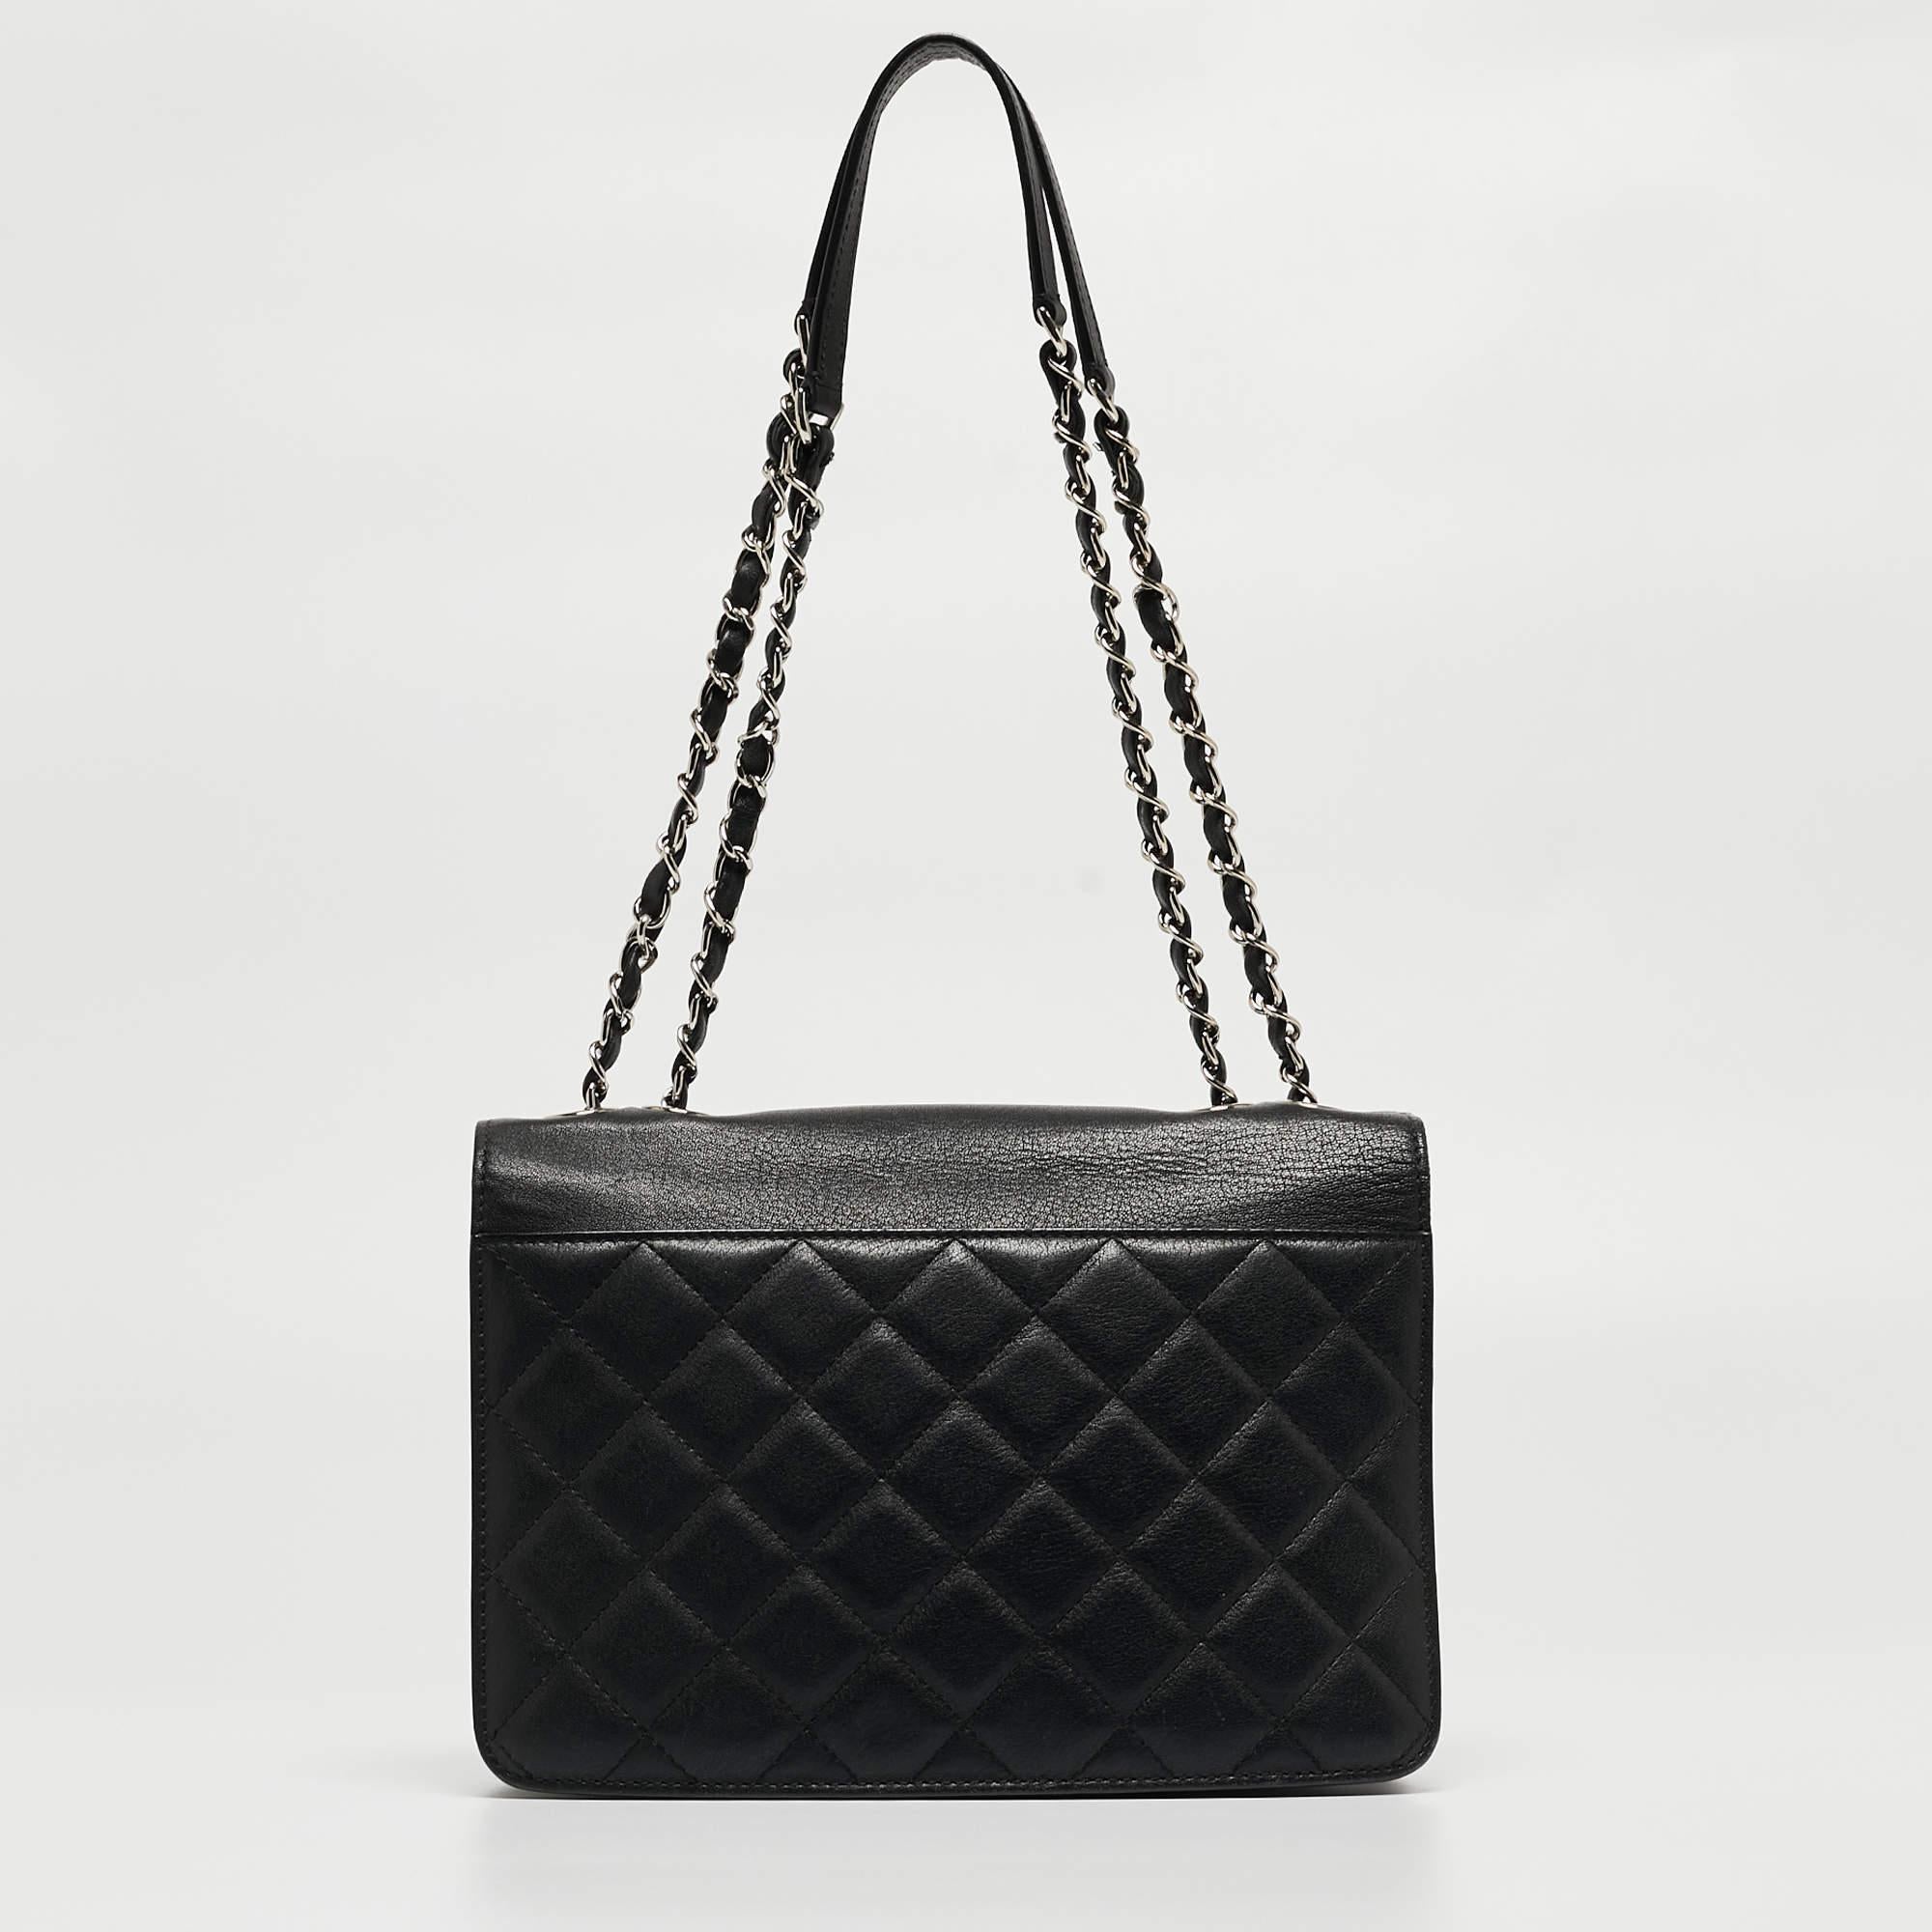 Diese Chanel Box Flap Bag ist das perfekte Accessoire, um jedes Outfit aufzupeppen und gleichzeitig stilvoll und minimalistisch zu bleiben. Diese kleine CC-Tasche aus schwarzem, gestepptem Leder mit silberfarbenen Beschlägen, Schulterriemen und